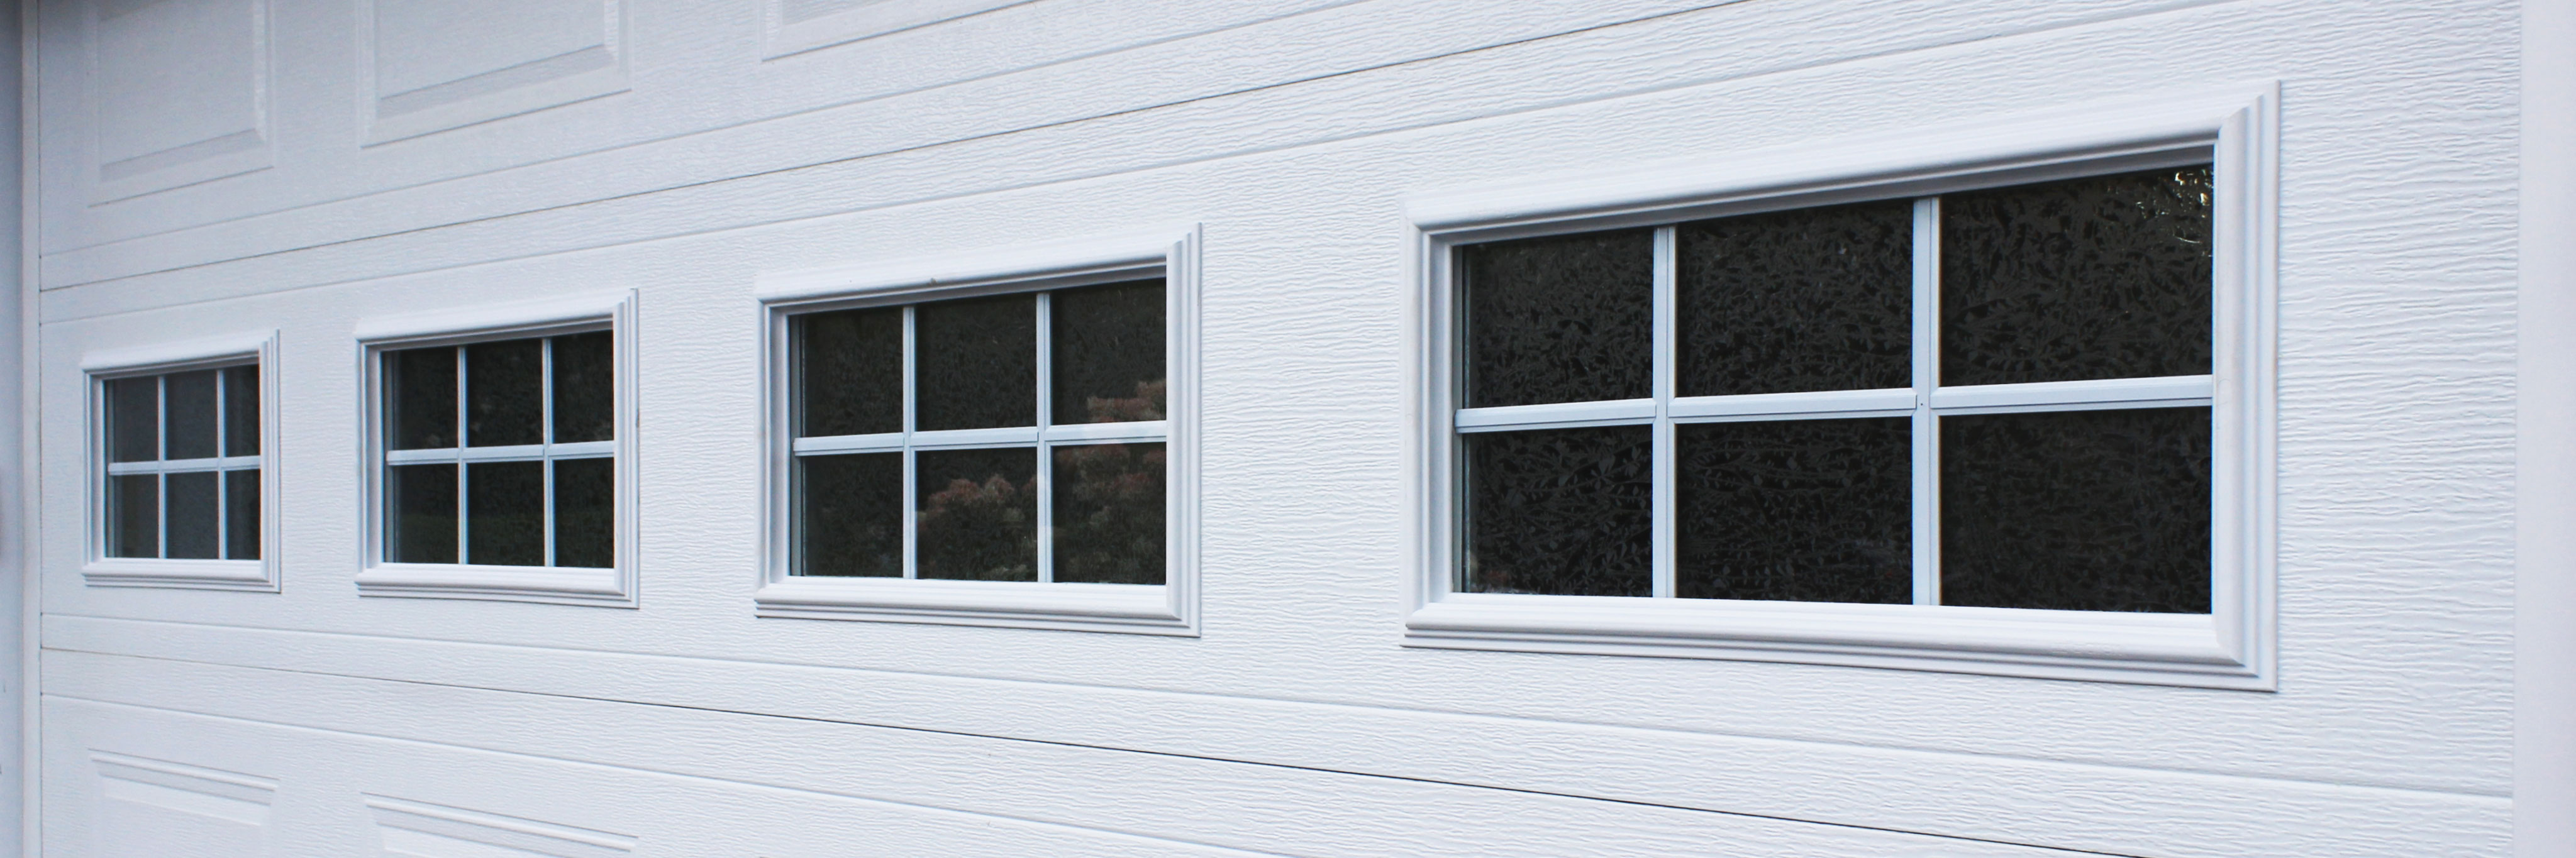 Thermal Windows To Your Garage Door, How To Replace Garage Door Inserts